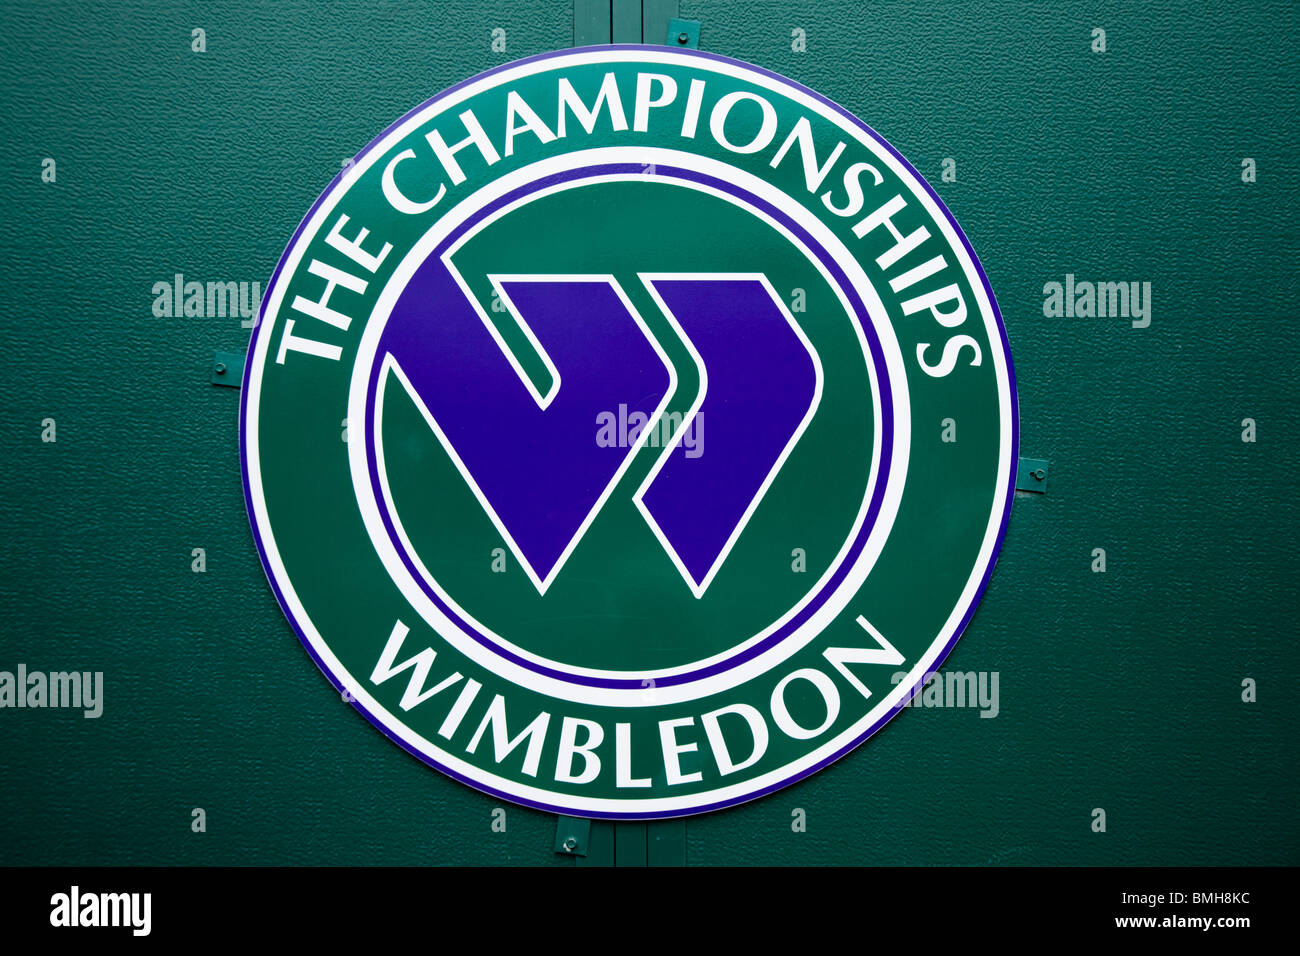 Wimbledon Tennis Championship logo / Grafica / Insignia / corporate identity alla Wimbledon Tennis massa. Regno Unito. Foto Stock